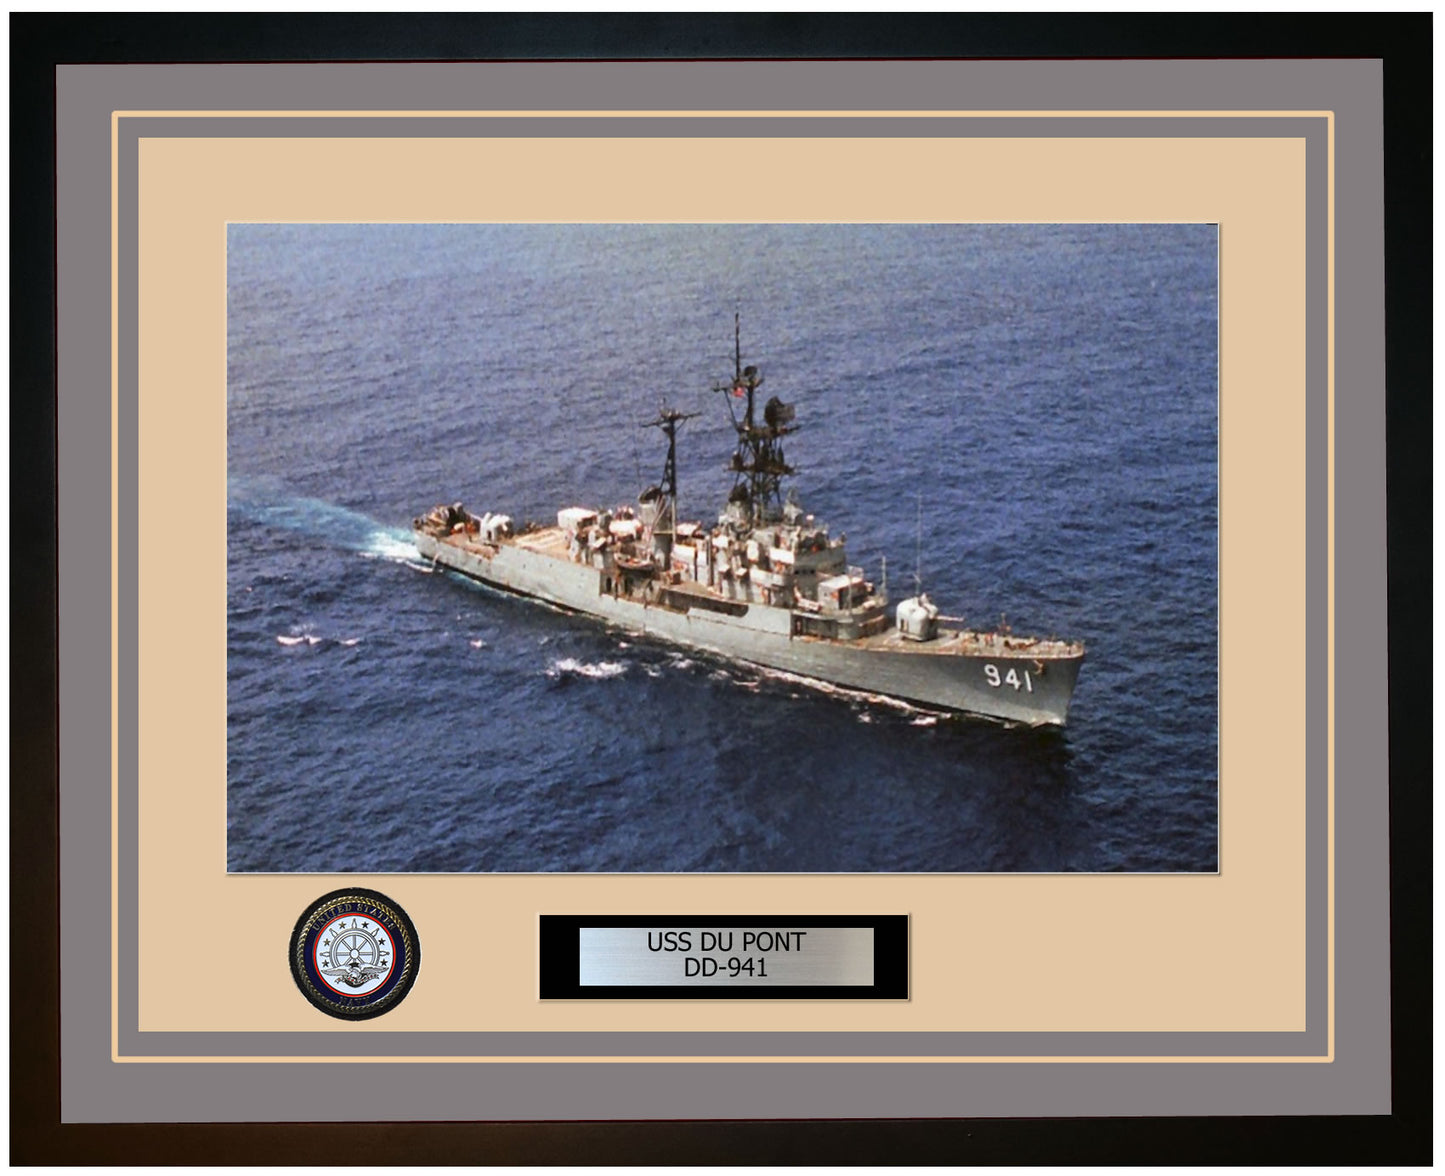 USS DU PONT DD-941 Framed Navy Ship Photo Grey